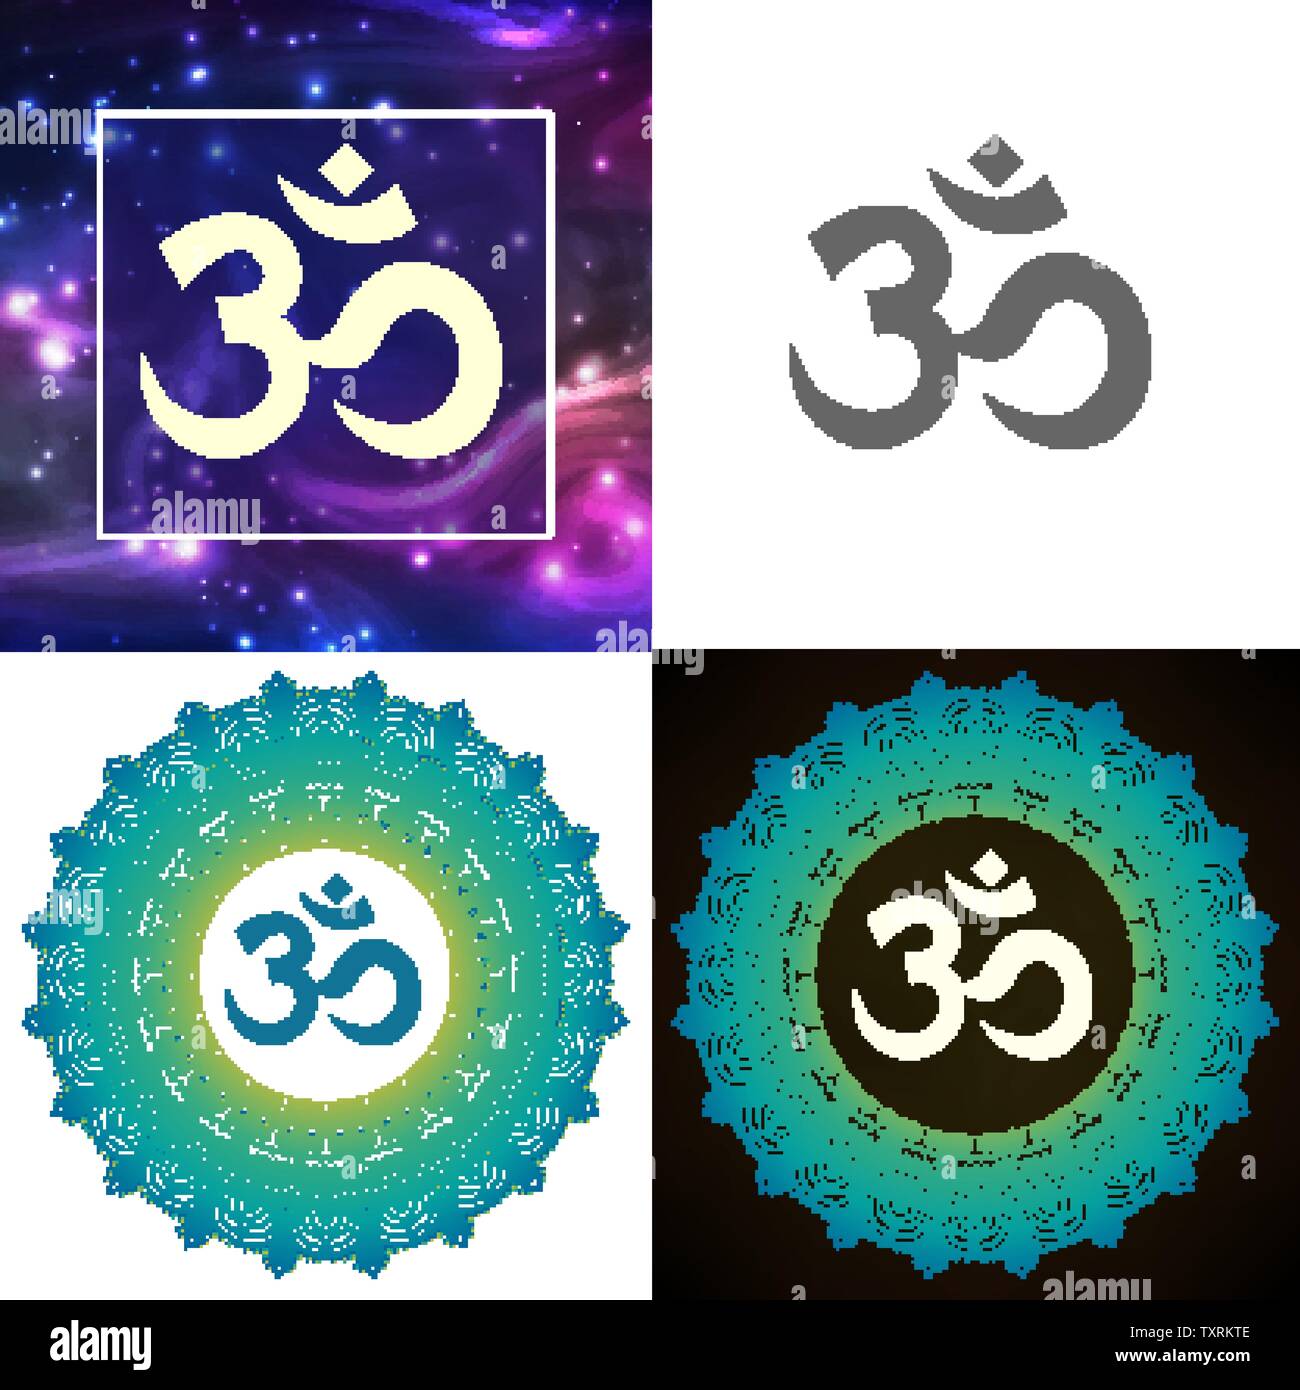 lord shiva symbols